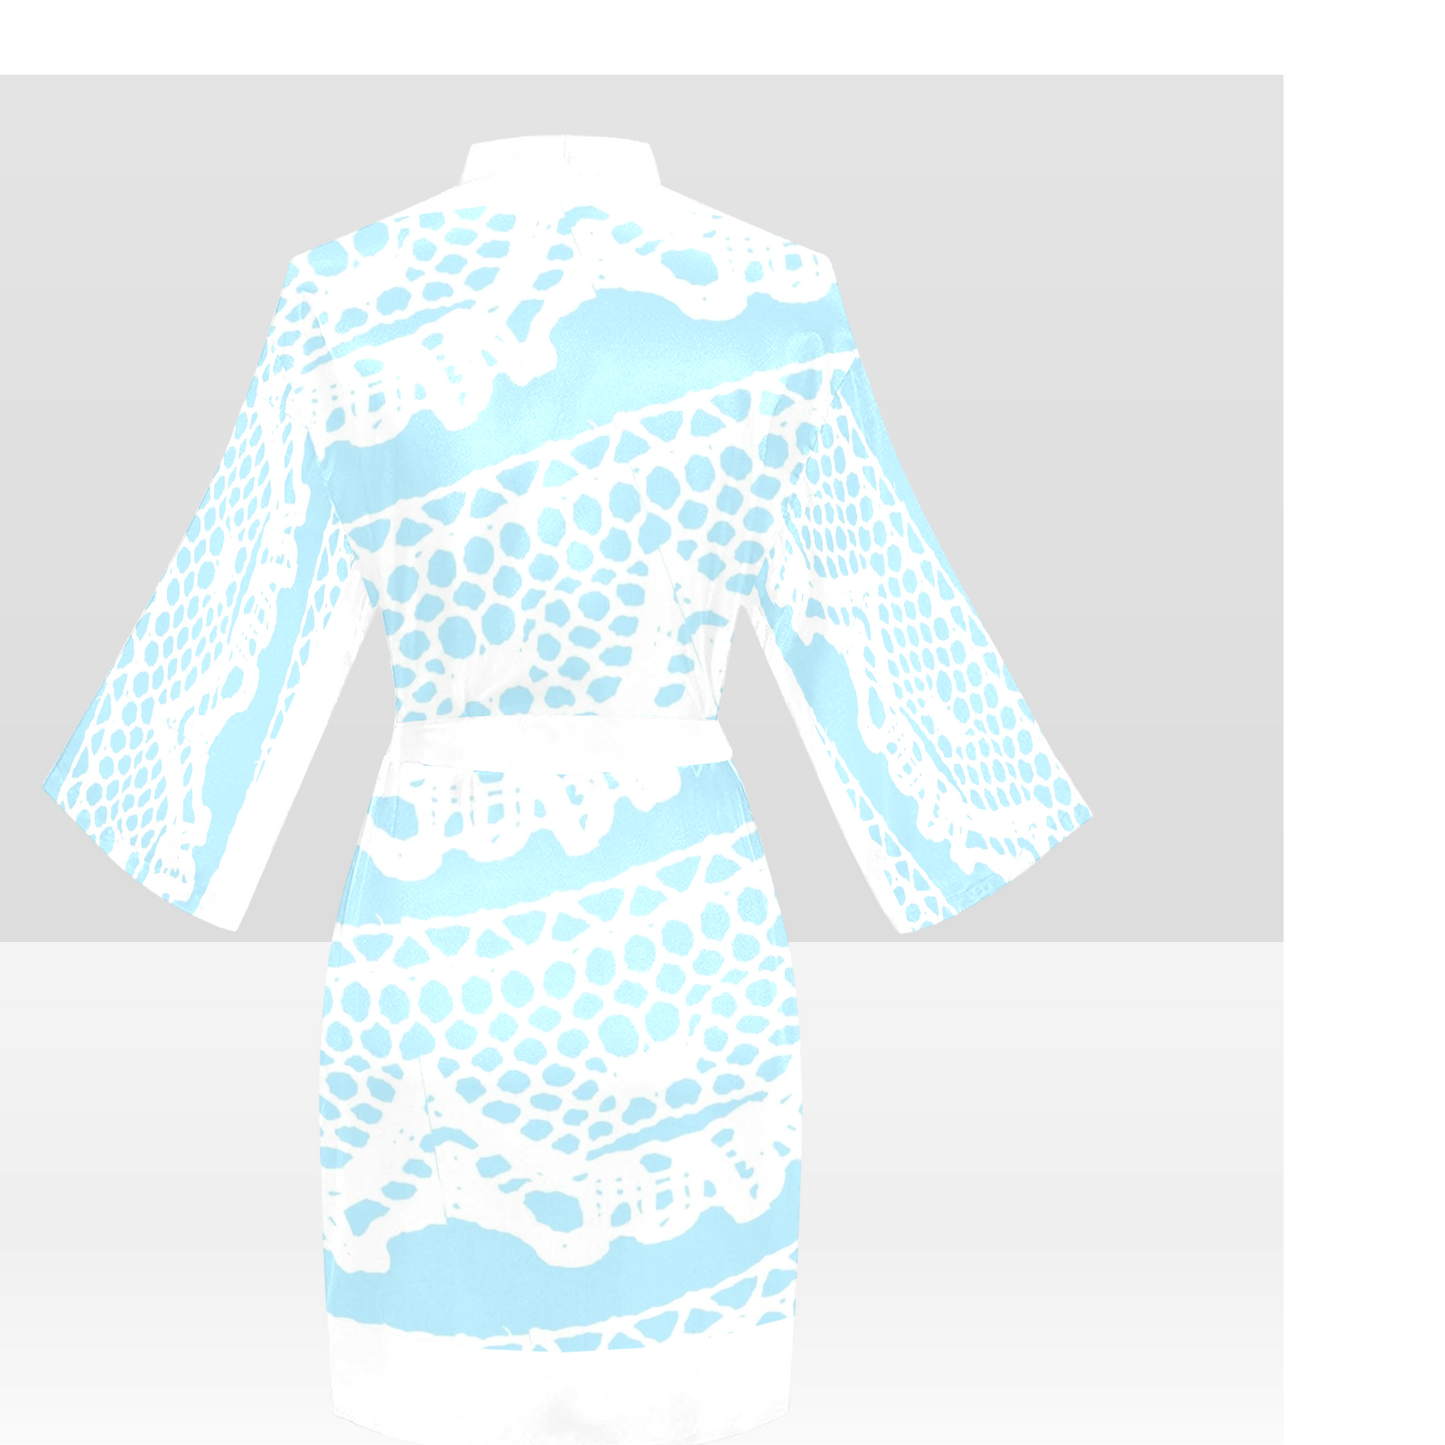 Victorian Lace Kimono Robe, Black or White Trim, Sizes XS to 2XL, Design 08